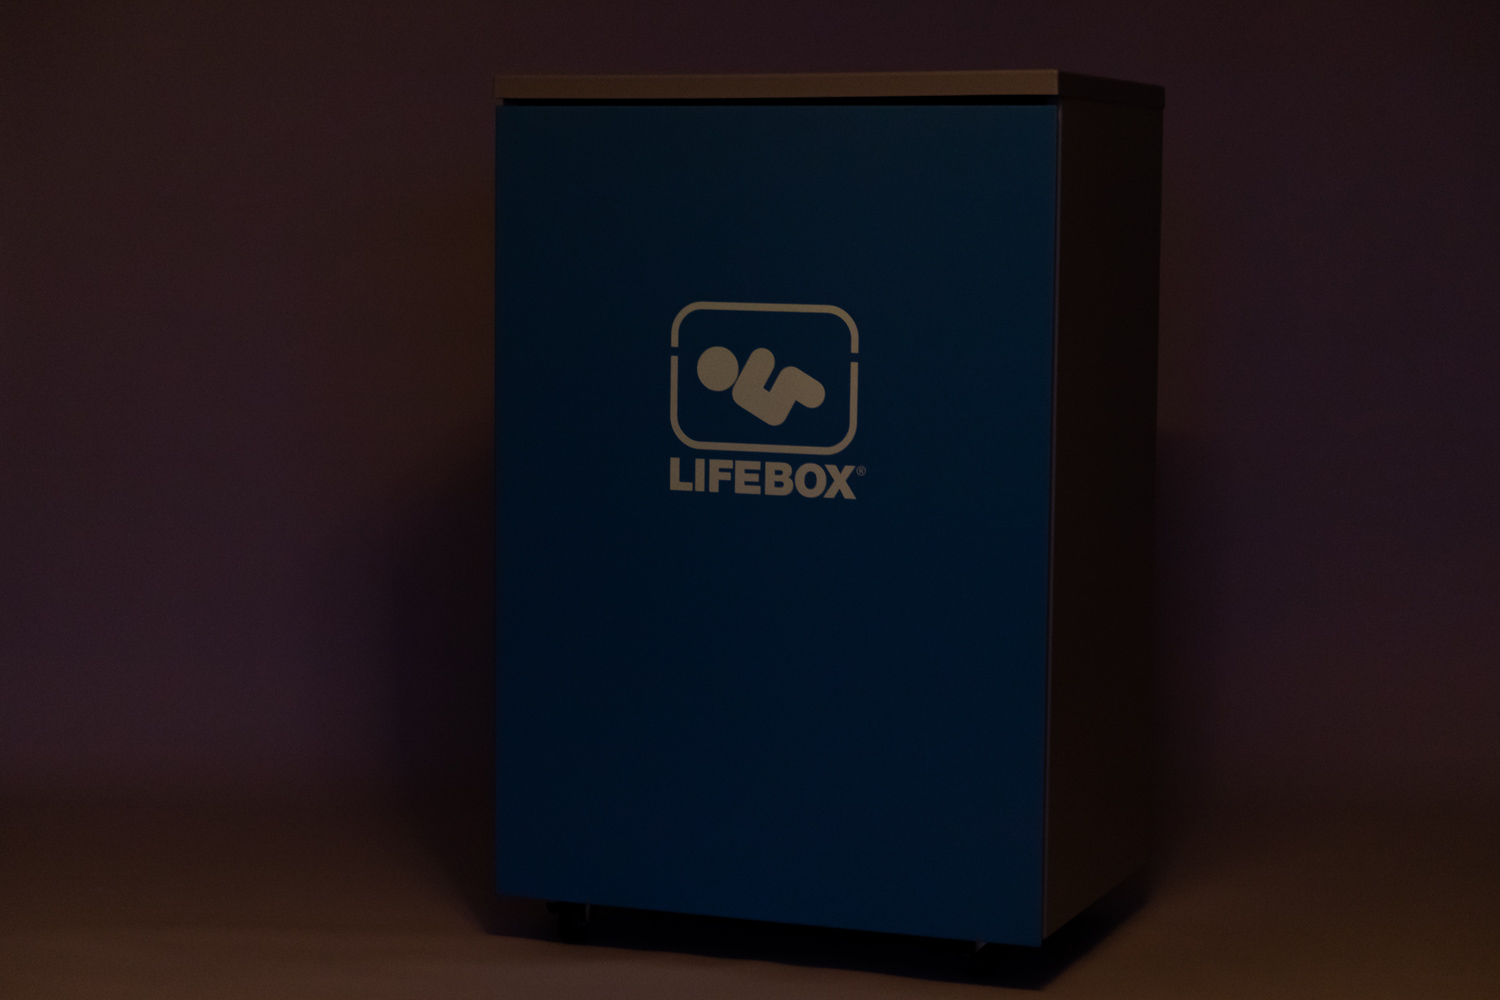 Zustellmöbel von NeoRescue zur Lagerung der Lifebox